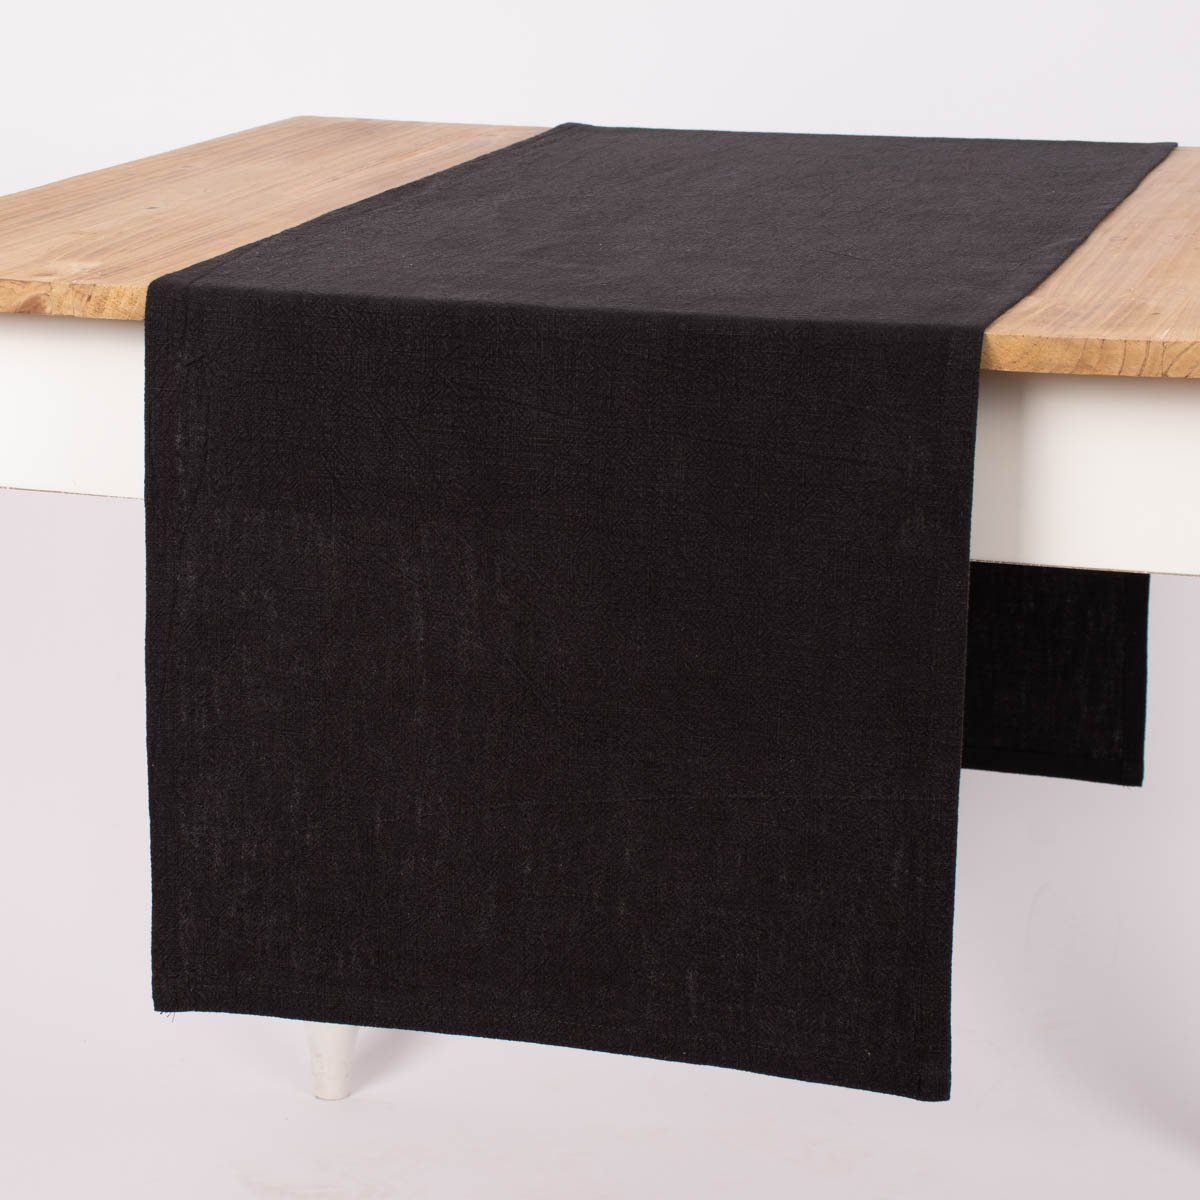 SCHÖNER LEBEN. Tischläufer SCHÖNER LEBEN. Tischläufer Bio Ramie Leinenoptik schwarz 40x160cm, handmade